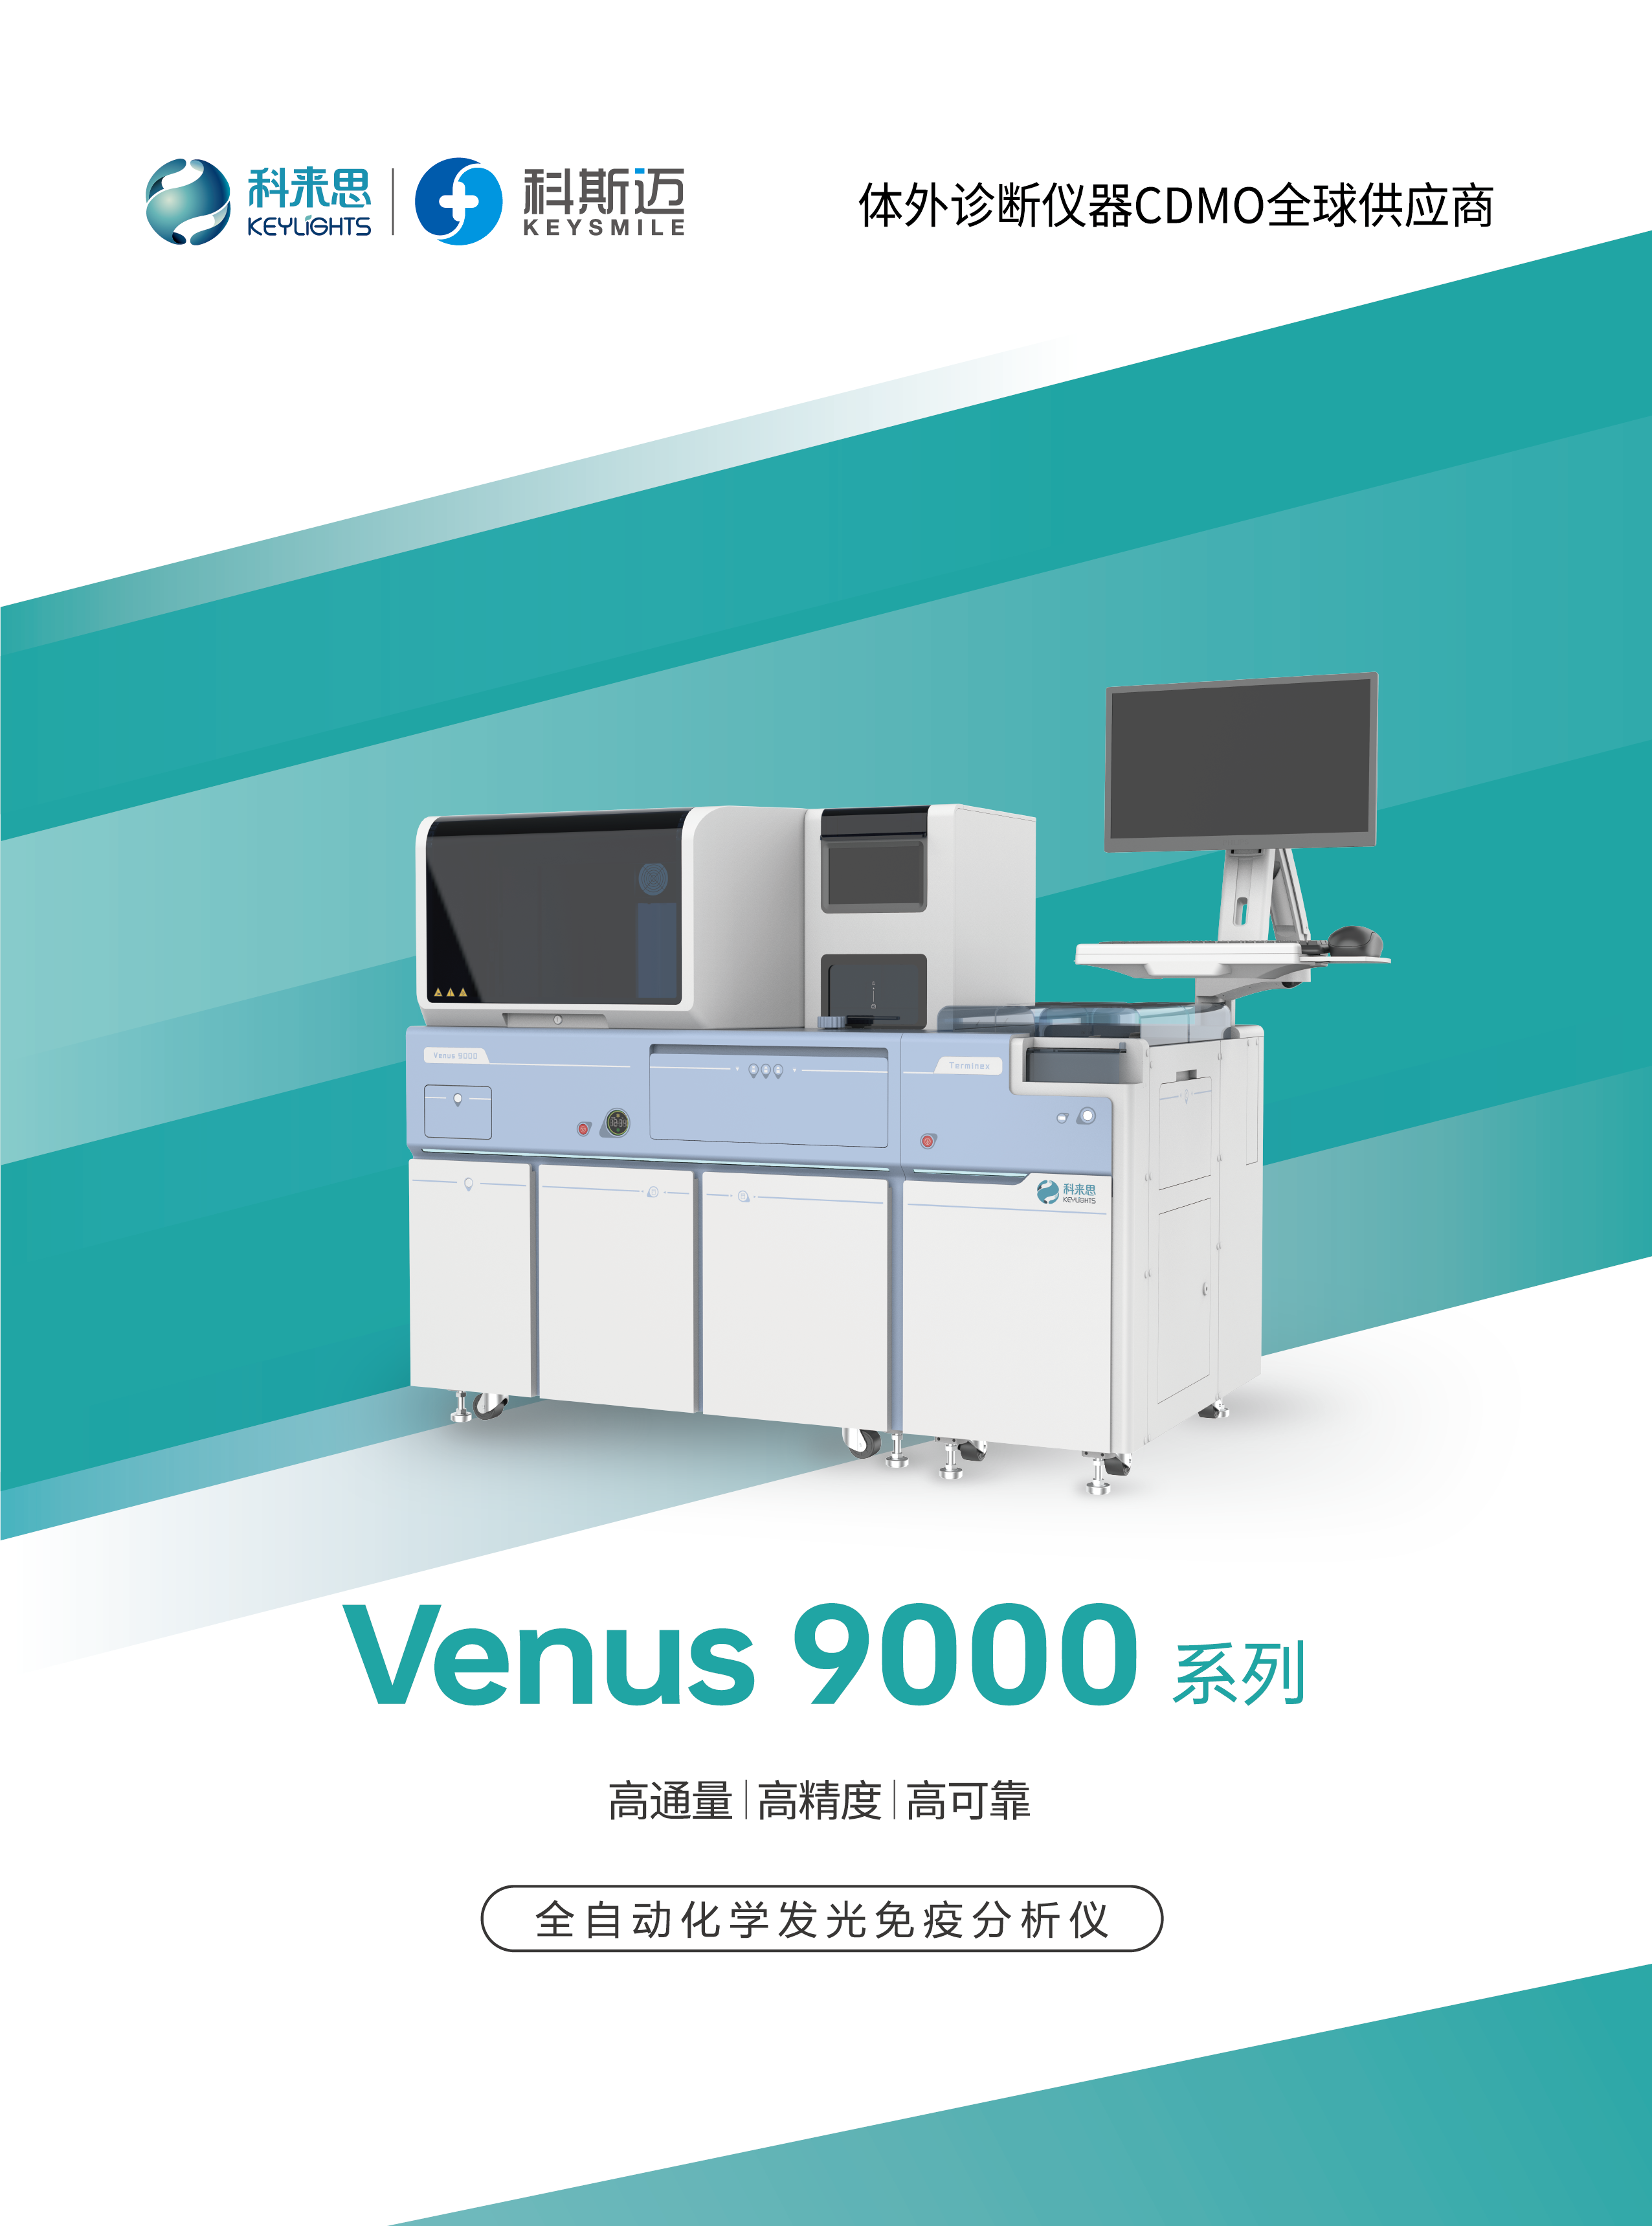 Venus 9000